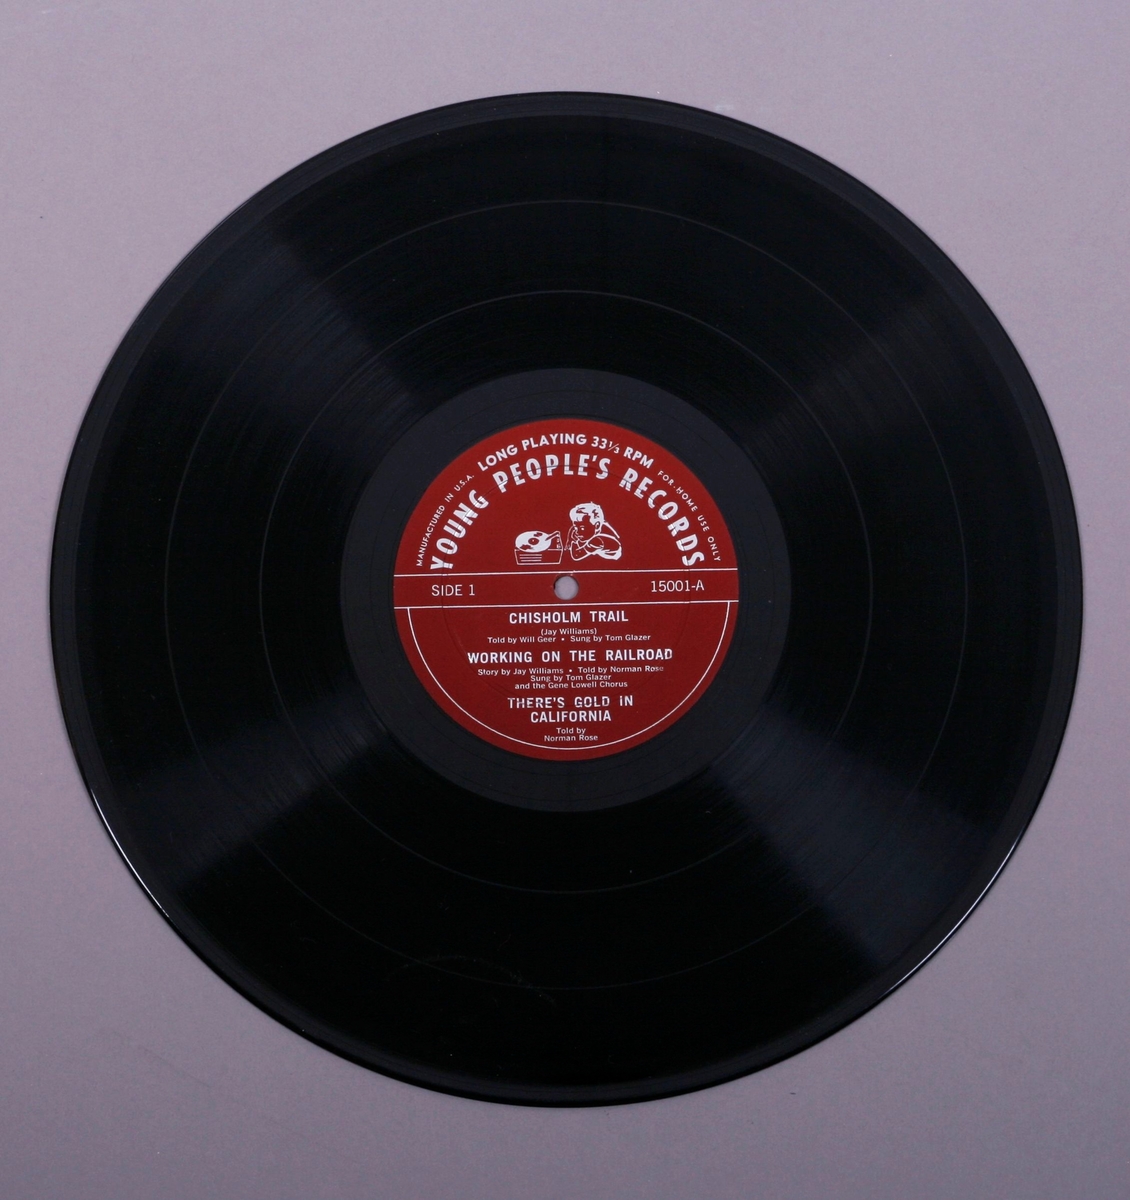 Grammofonplate i svart vinyl og plateomslag i papp. Plata ligger i en uoriginal plast- og papirlomme merket "Angel Records".